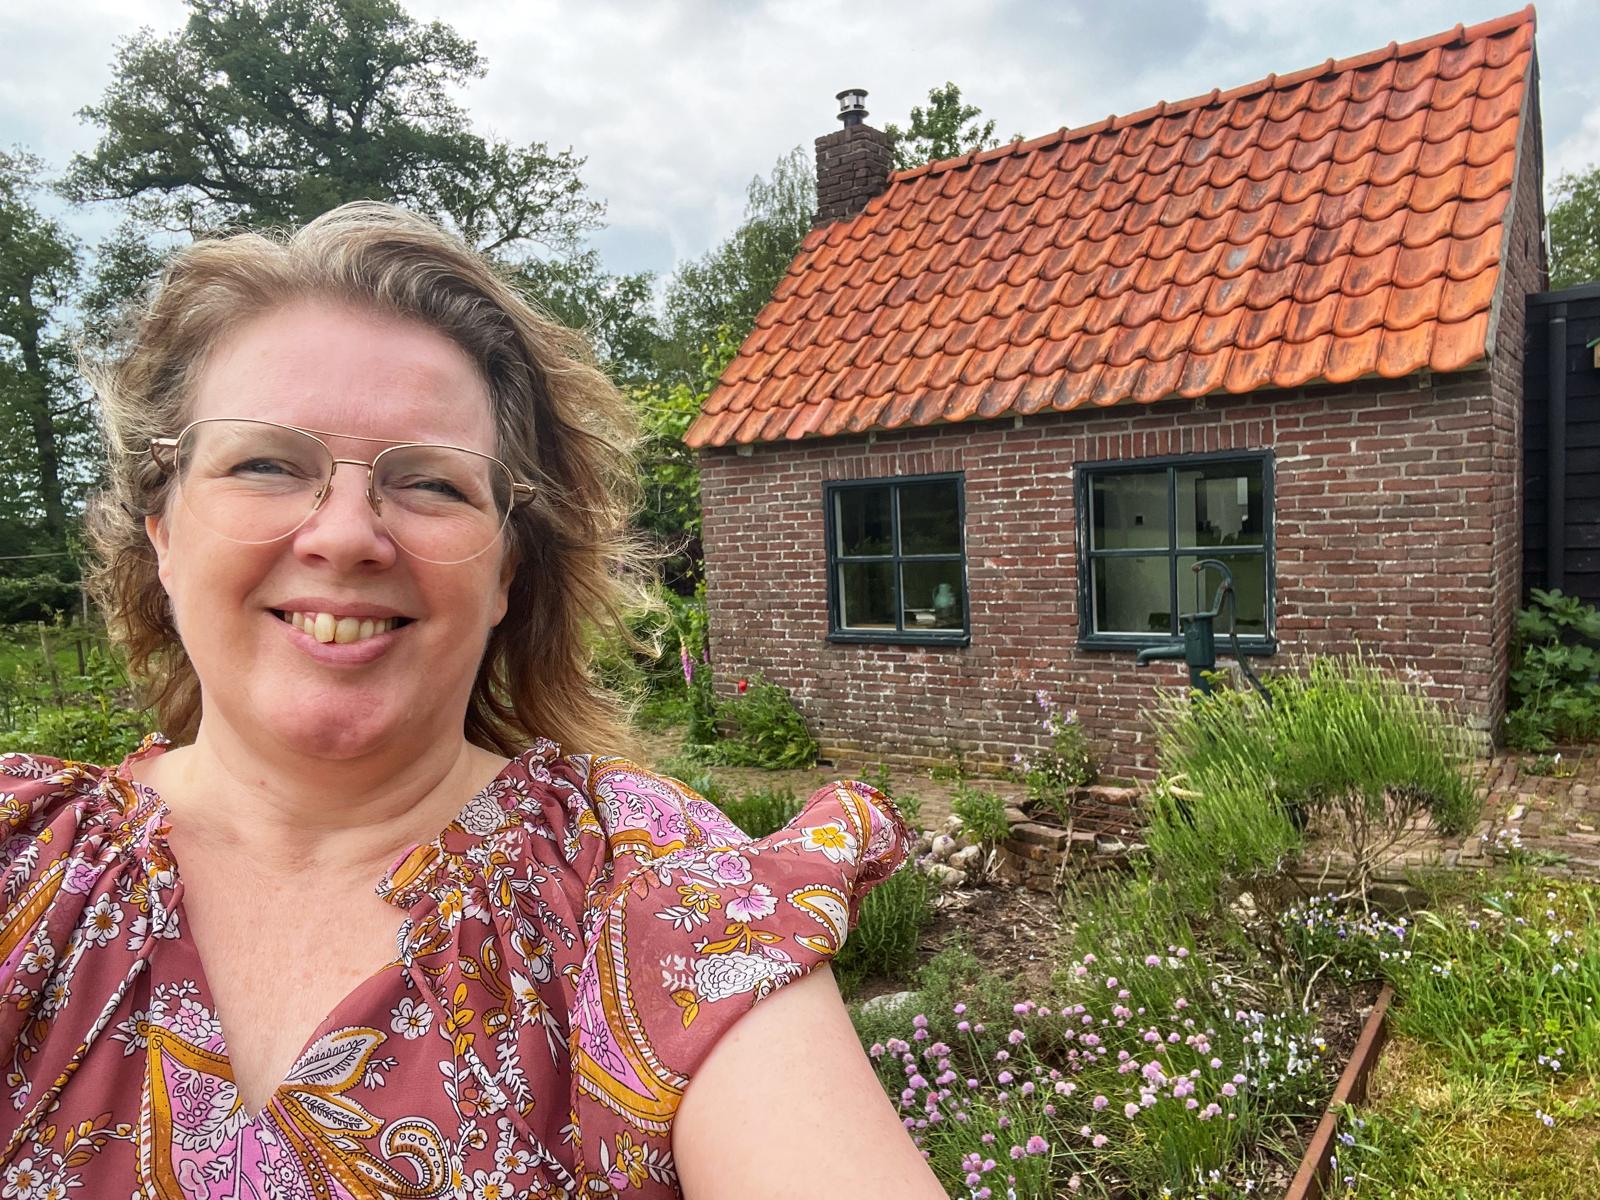 Margaret bij het toegankelijke bakhuisje in Drenthe